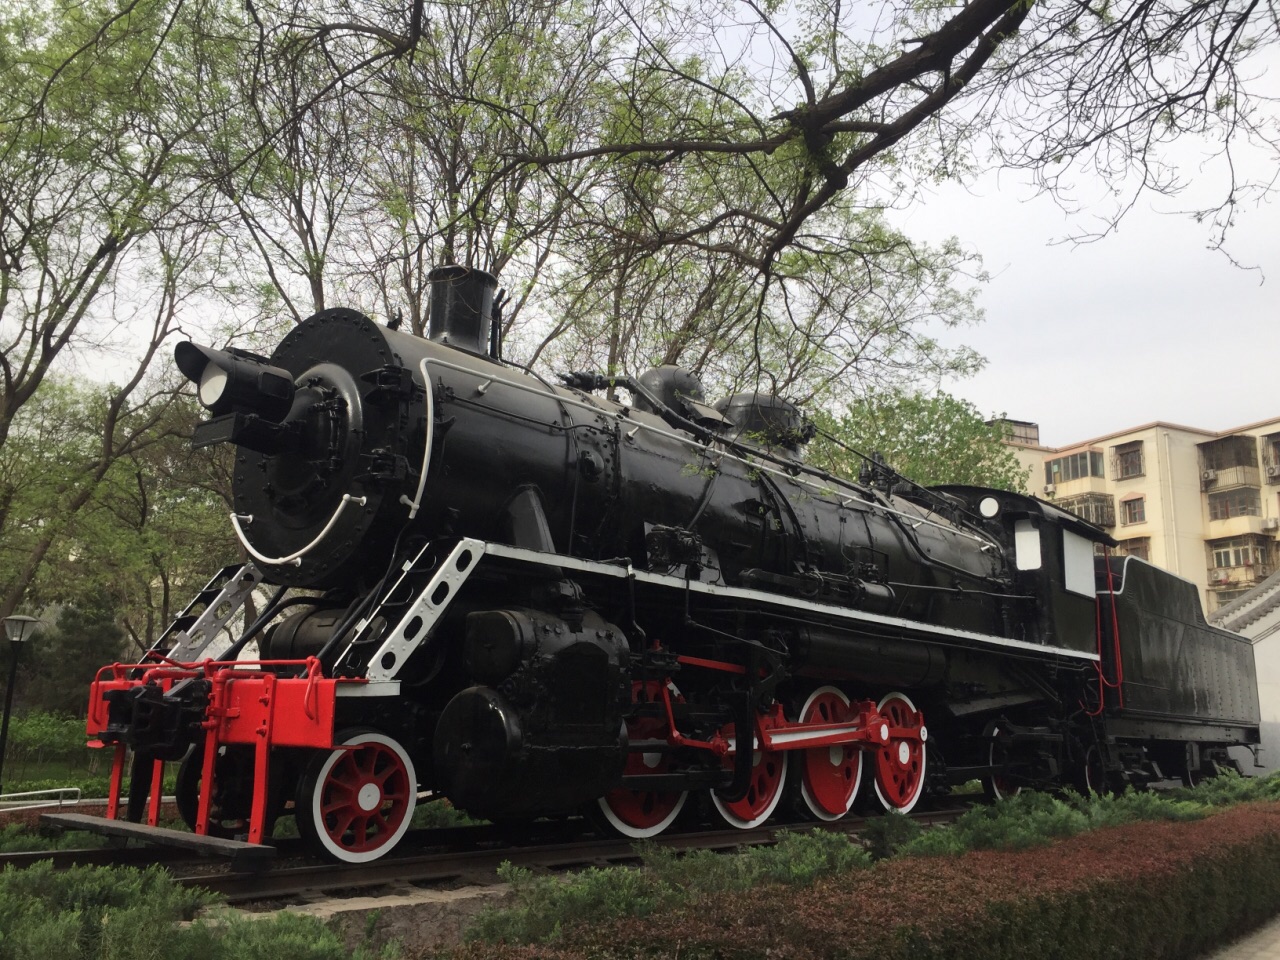 玲珑公园的蒸汽机车 玲珑公园有一台真正的蒸汽机车，保存得还很好，真不容易。这种火车头很少能够看见了，